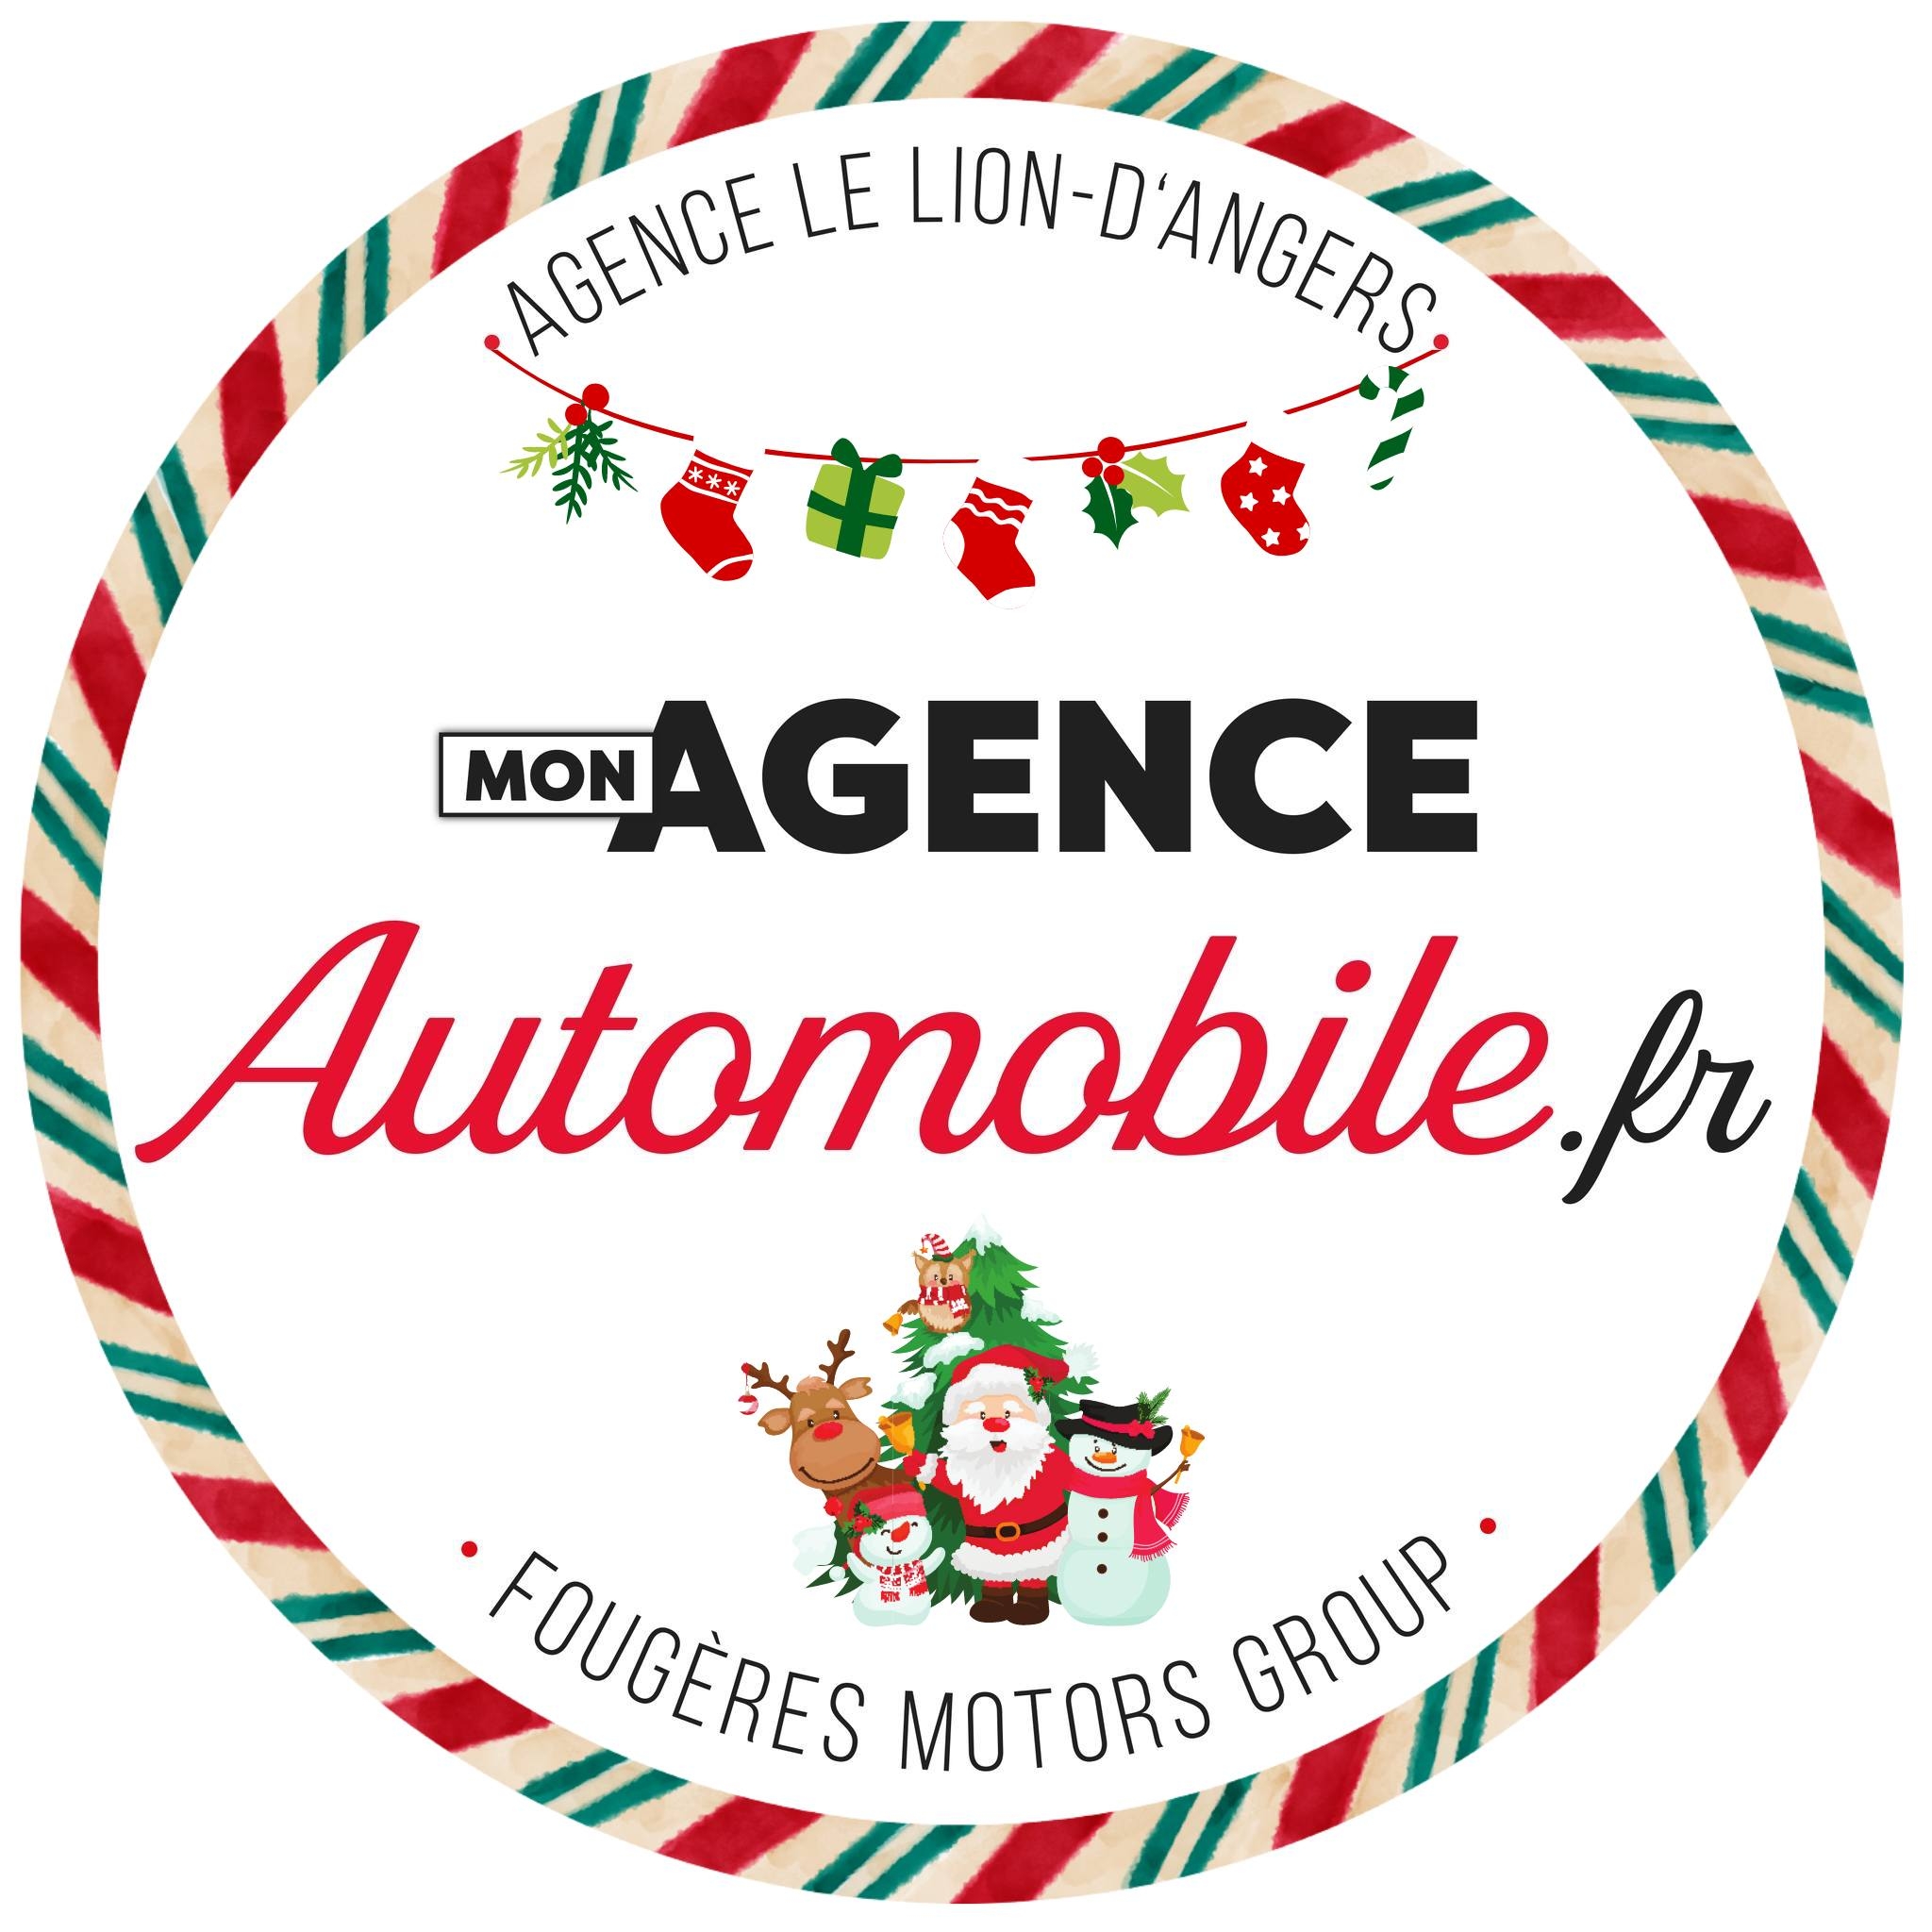 Ouverture de Mon agence Automobile.fr à Le Lion-d'Angers